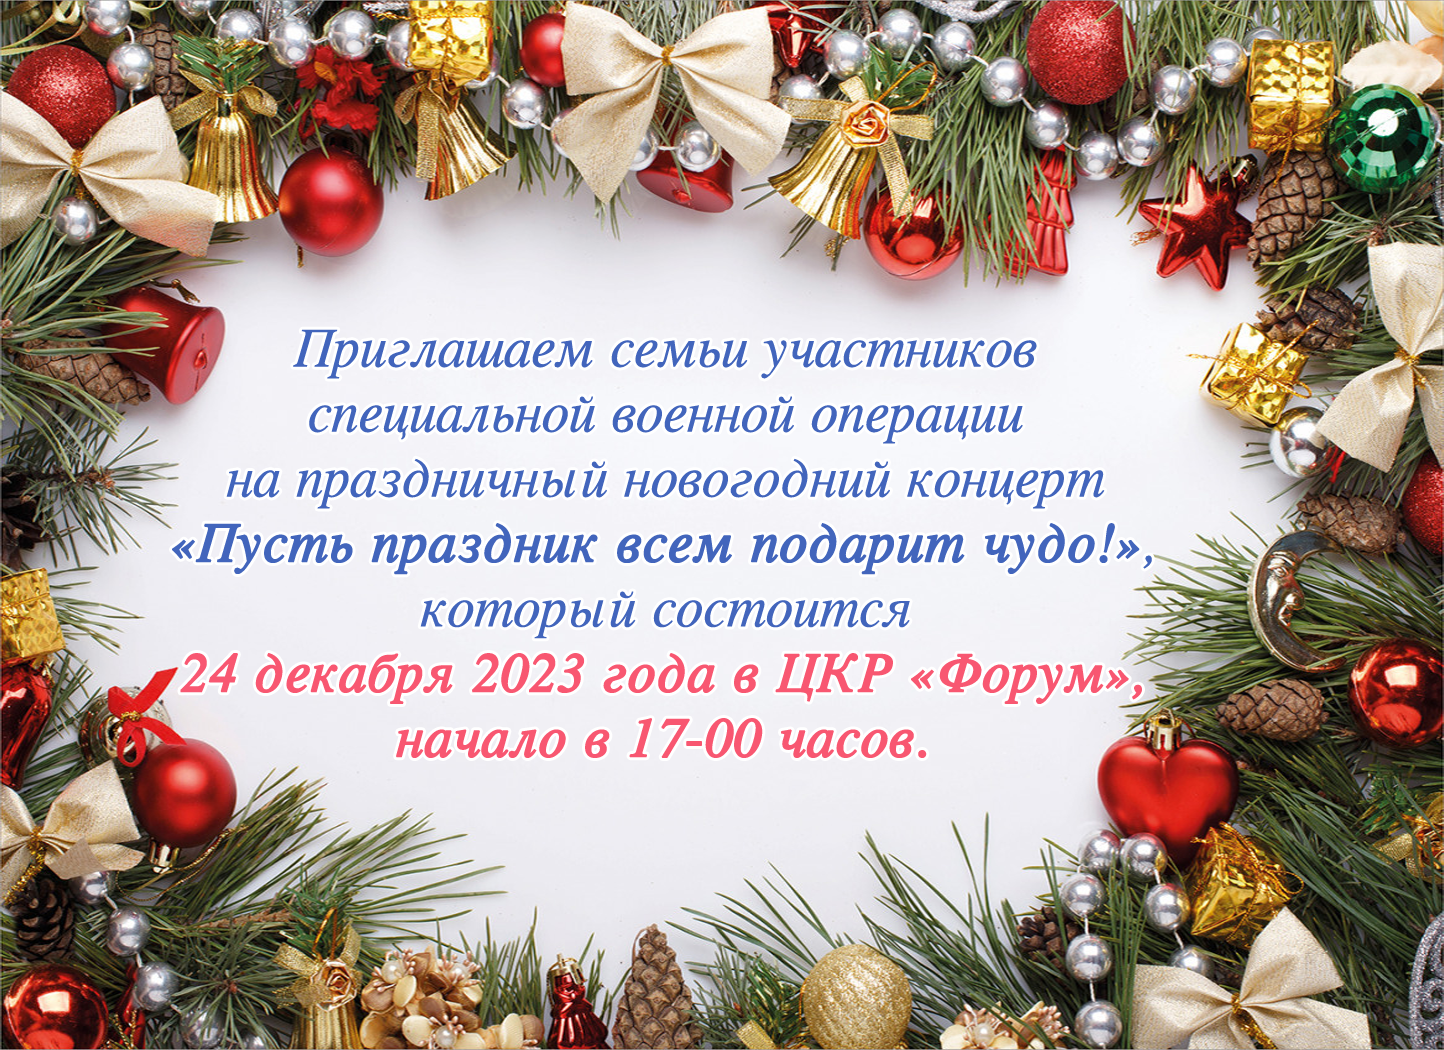 24 декабря состоится праздничный новогодний концерт.